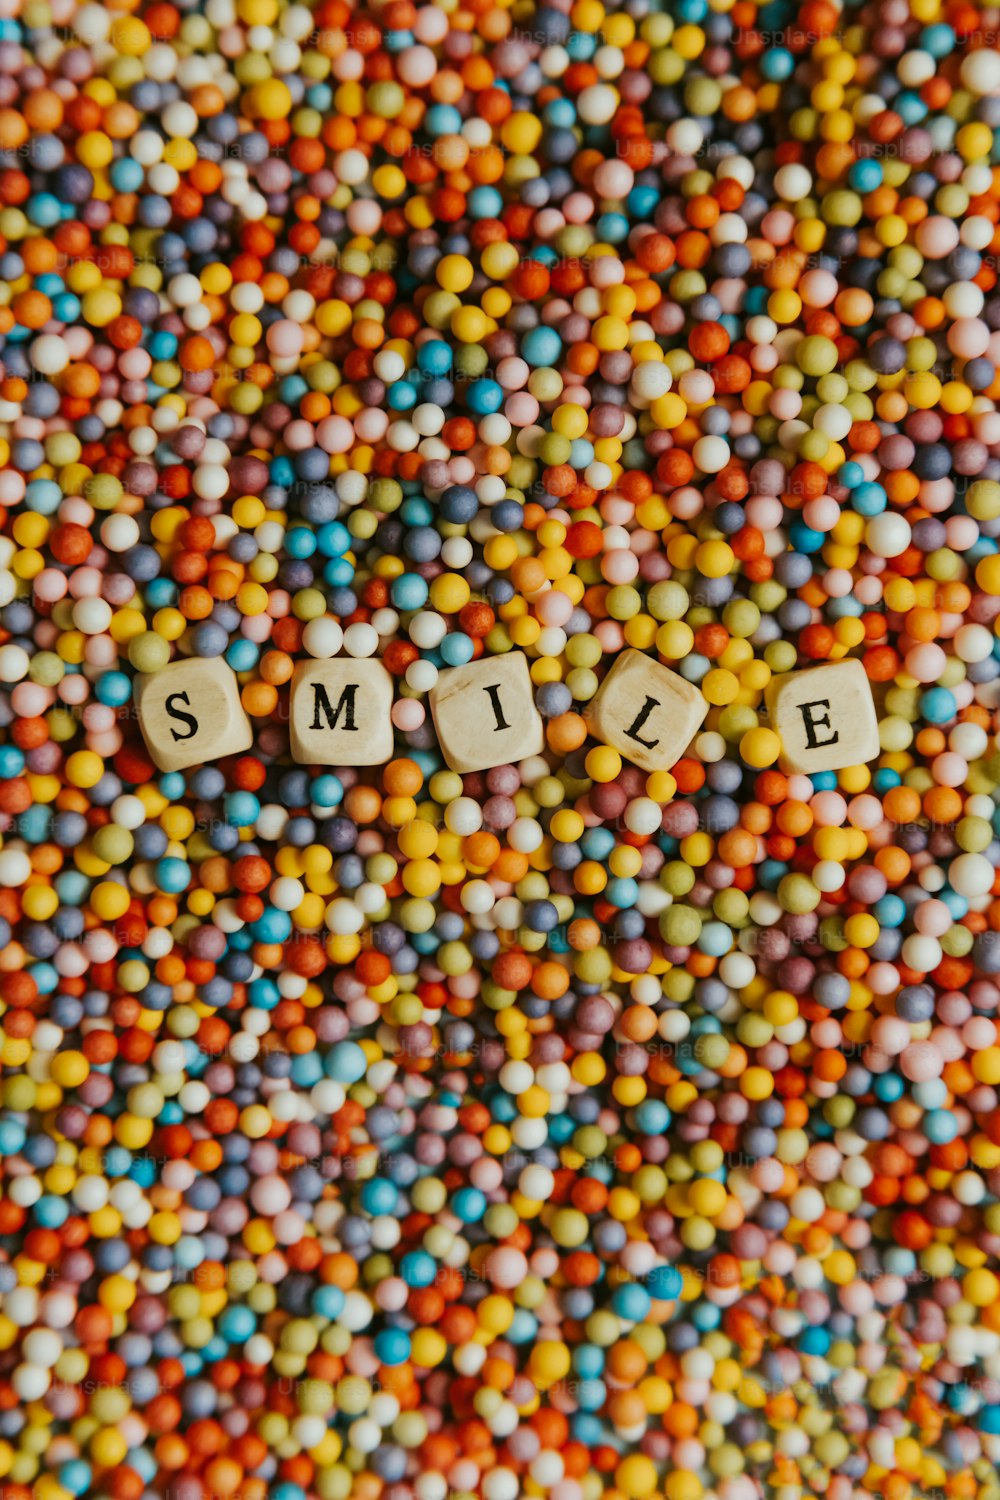 La parola sorriso scritta in piccole lettere circondata da caramelle